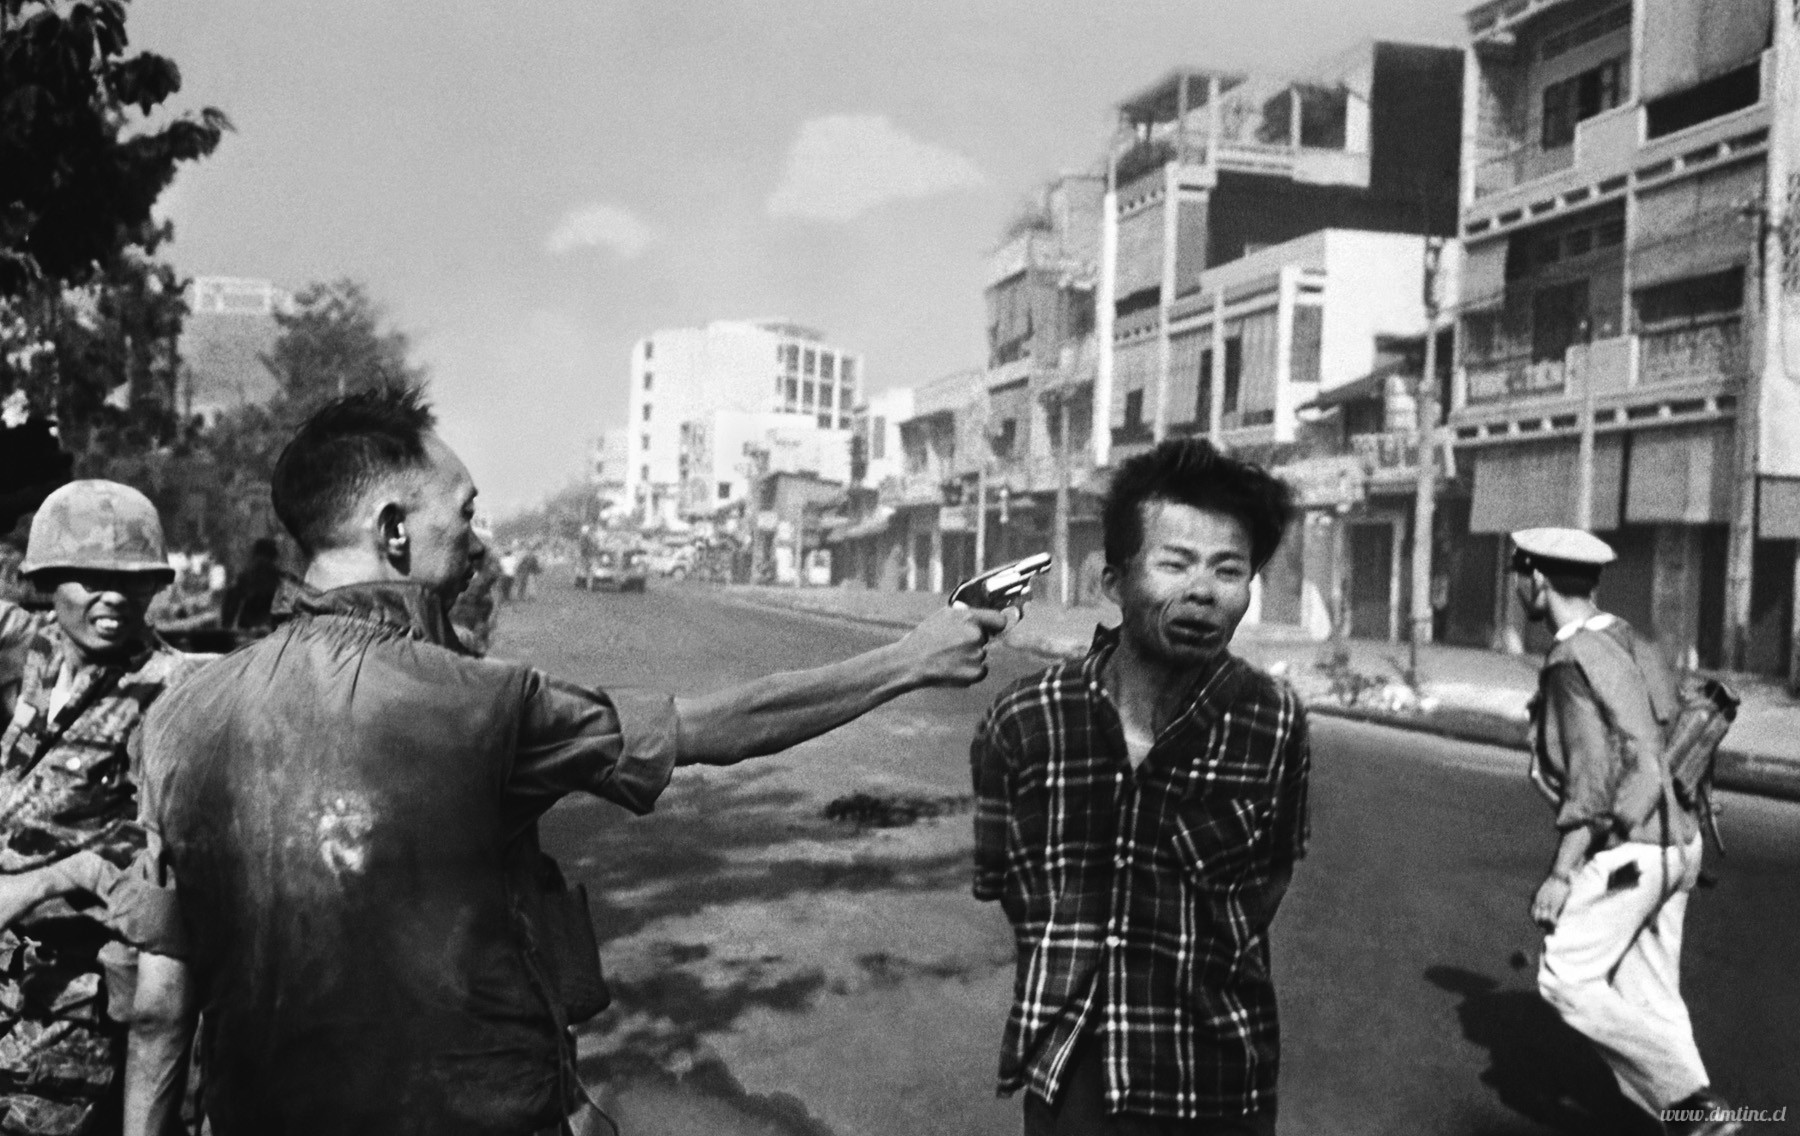 eddie-adams-gano-el-premio-pulitzer-en-1969-por-esta-fotografia-tomada-en-saigon-vietnamd1bfc.jpg